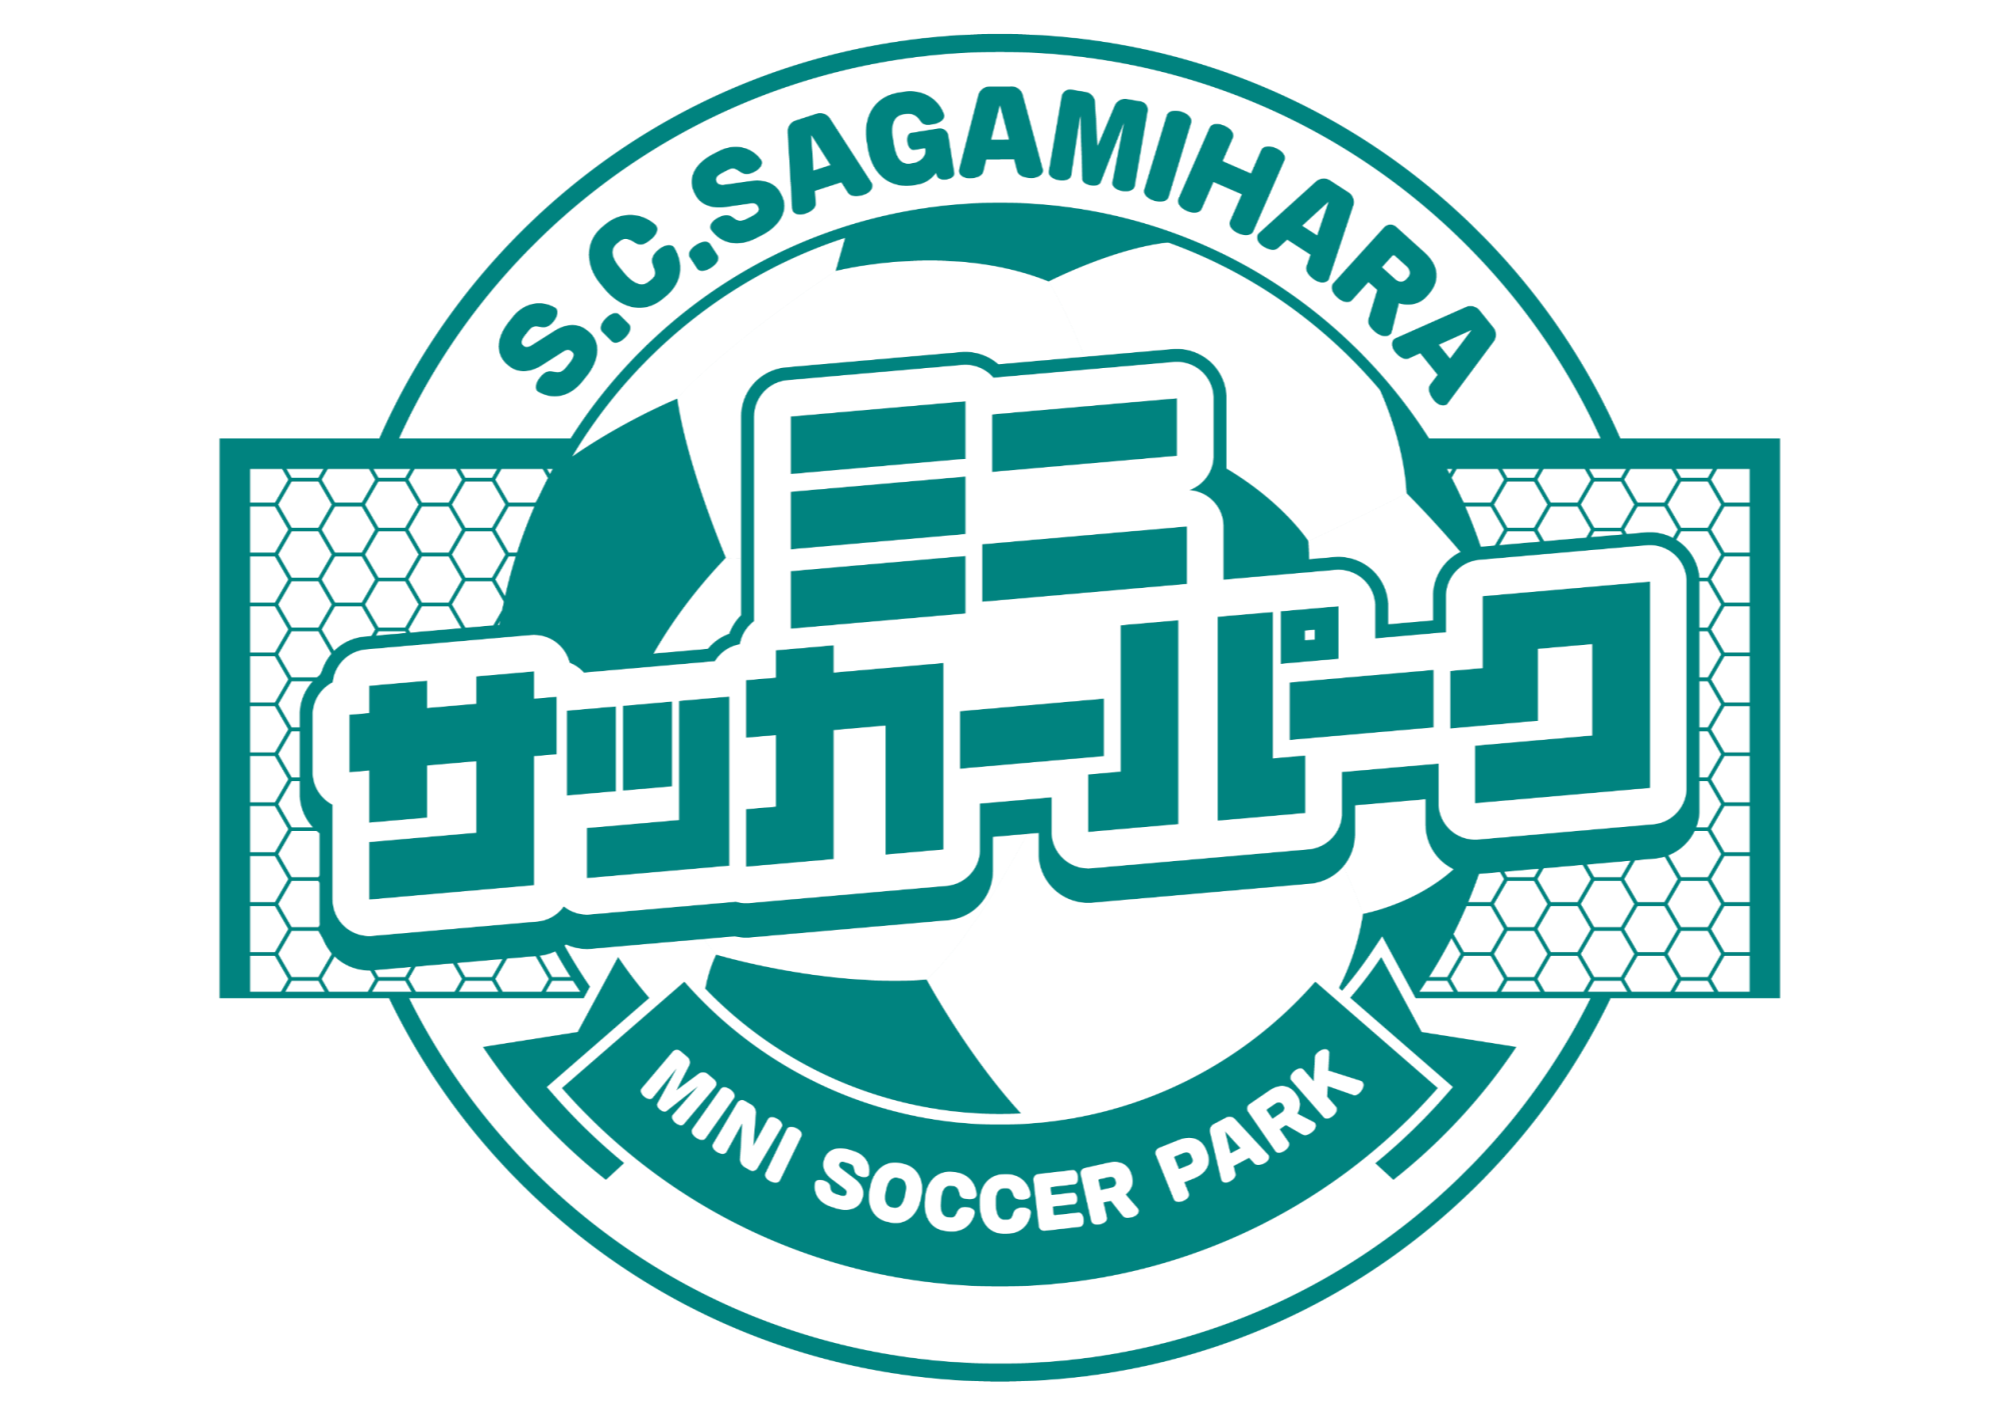 ミニサッカーパークロゴ.png